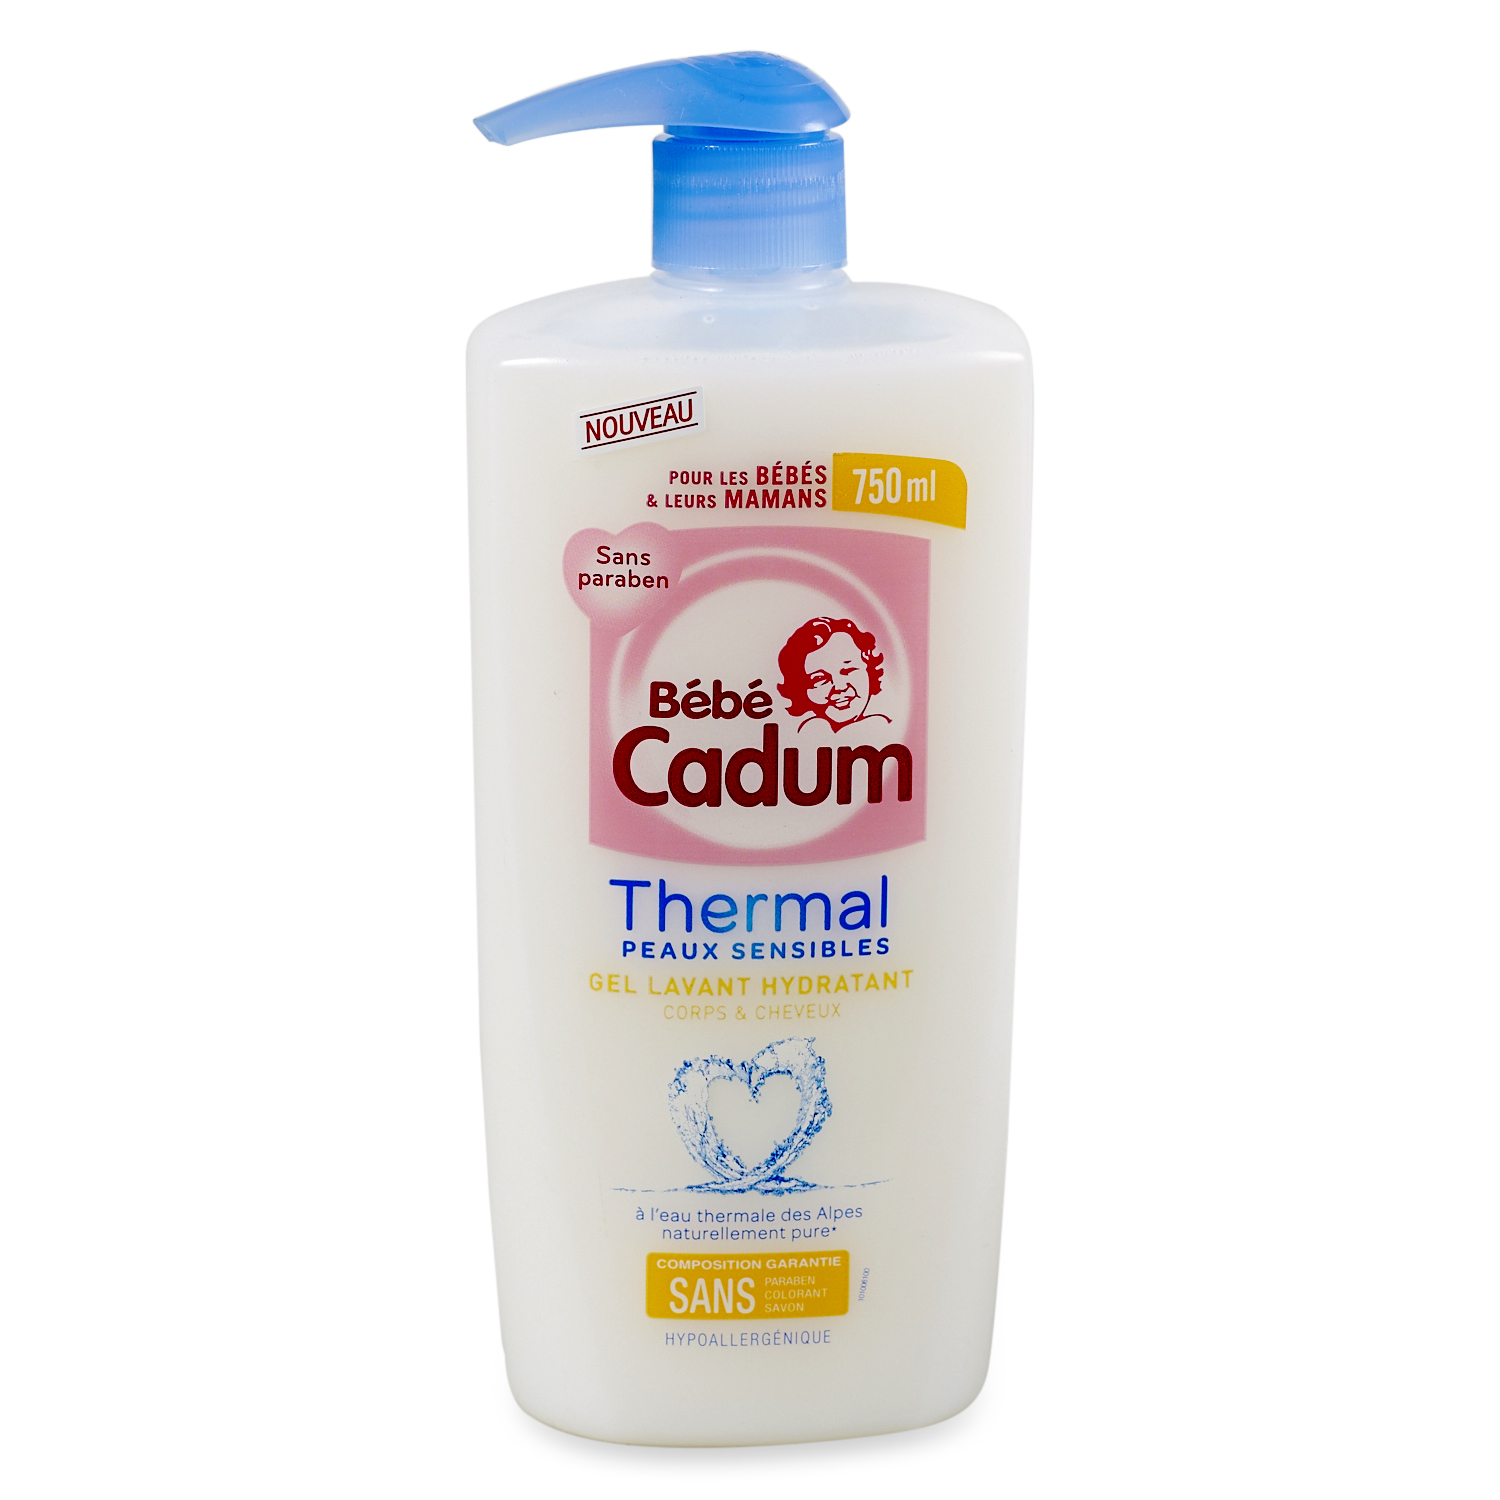 BEBE CADUM Bébé cadum thermal gel corps et cheveux hydratant